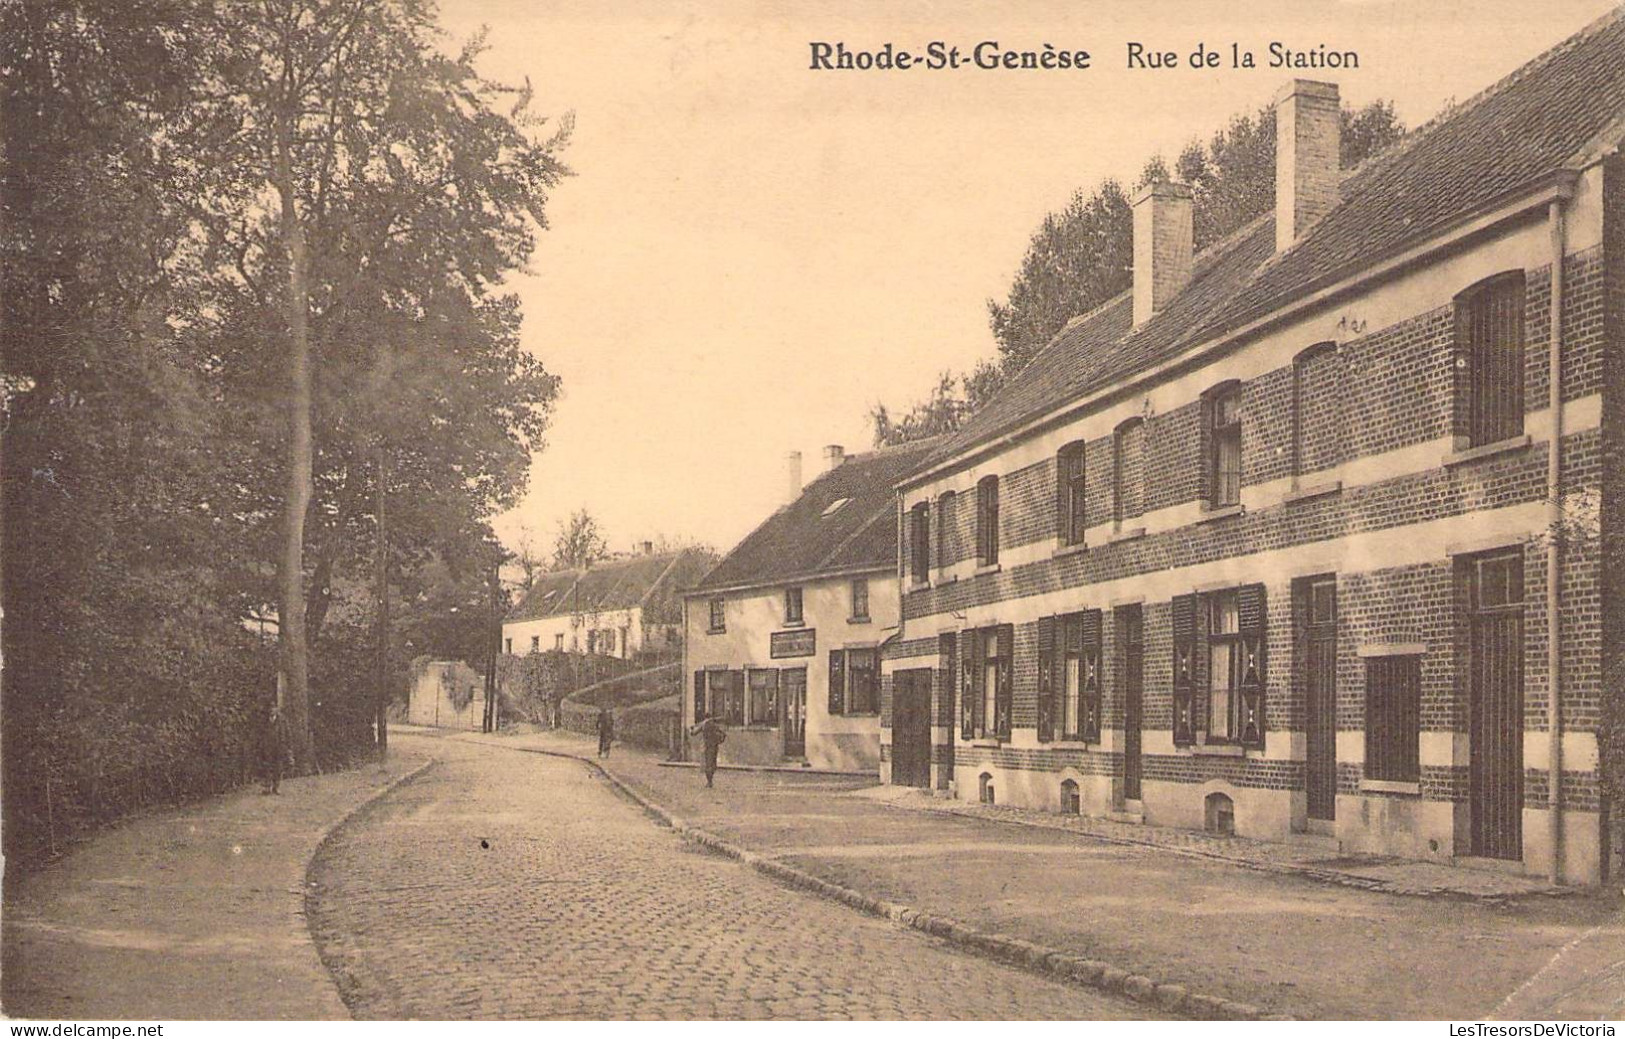 Belgique - Tongres - Vue Rhode Saint Genèse - Rue De La Station - Edit. V. Gofflot  - Carte Postale Ancienne - Rhode-St-Genèse - St-Genesius-Rode